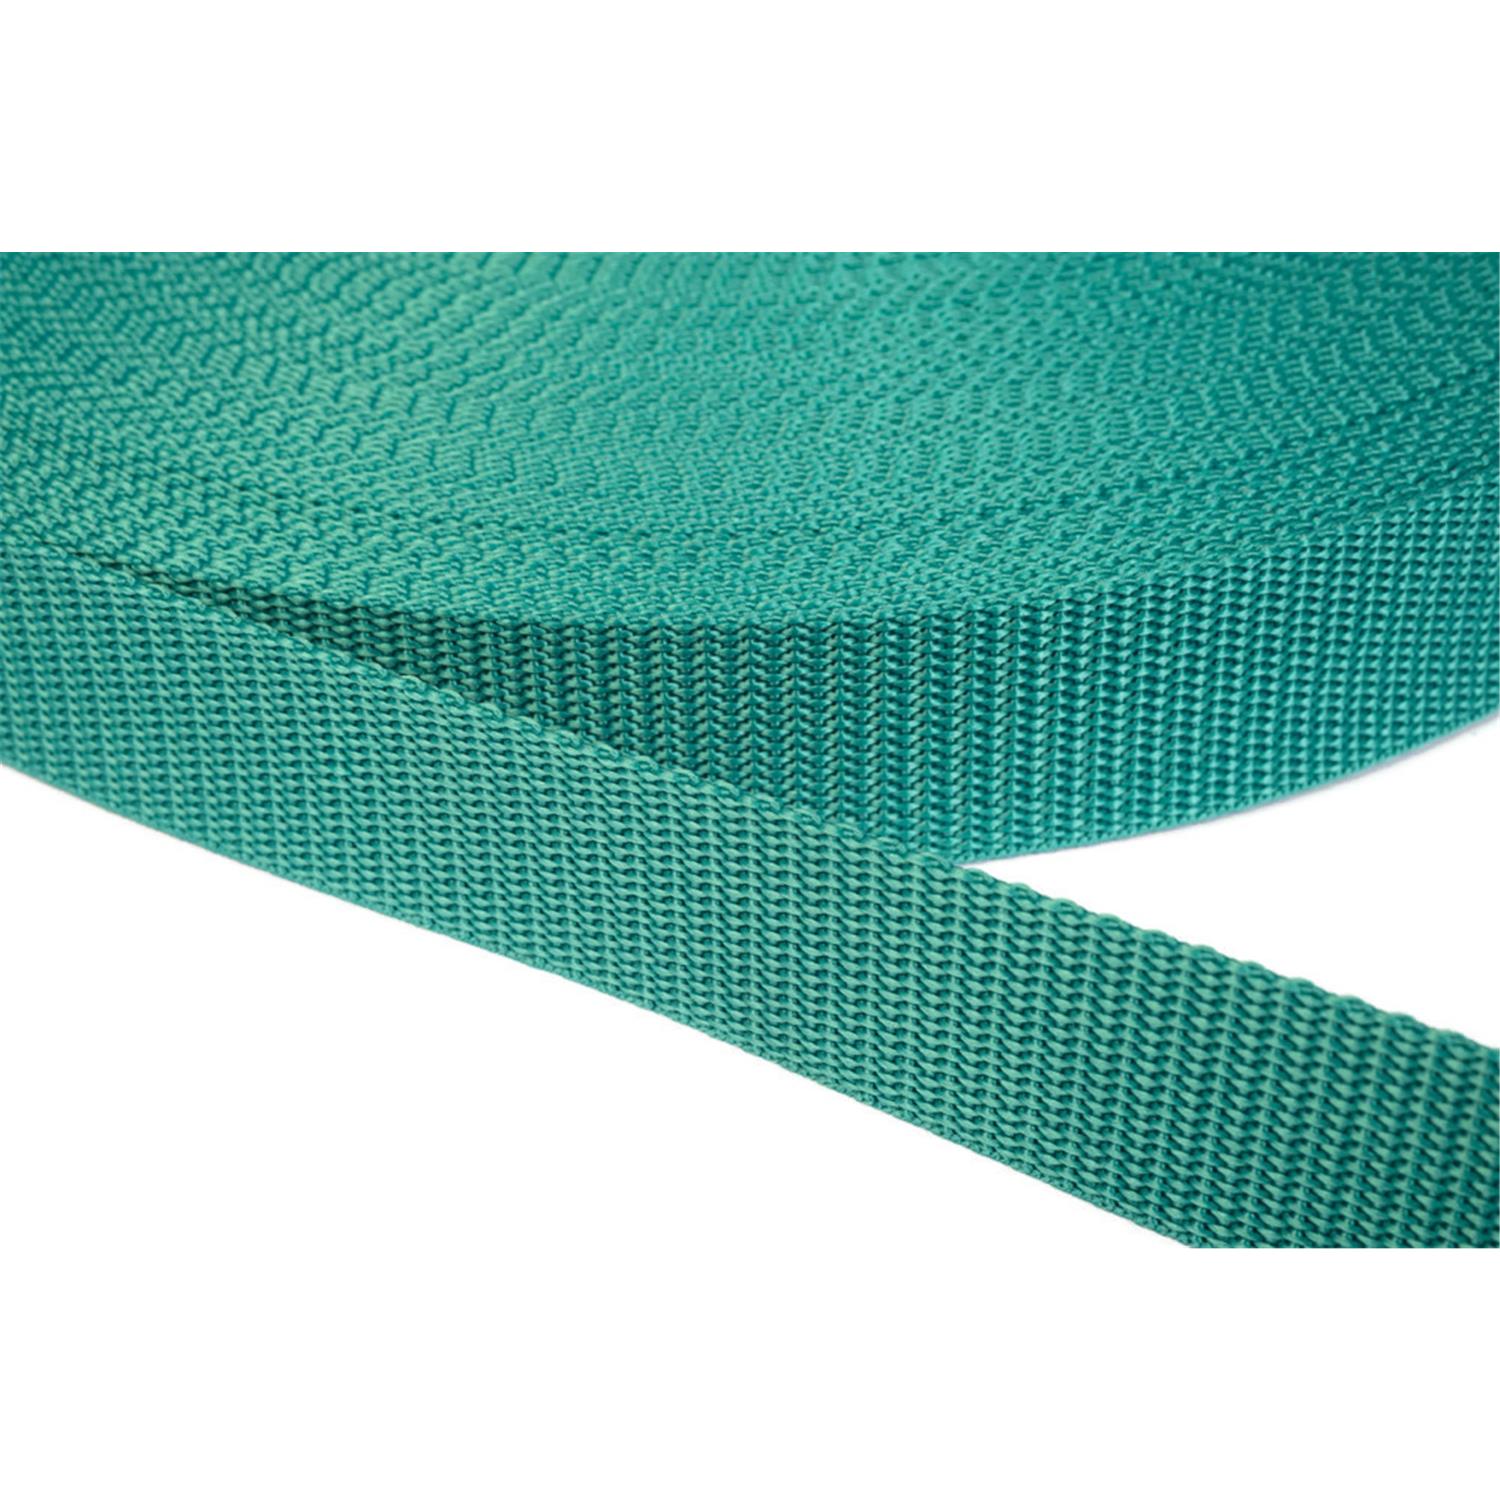 Gurtband 25mm breit aus Polypropylen in 41 Farben 31 - smaragdgrün 12 Meter